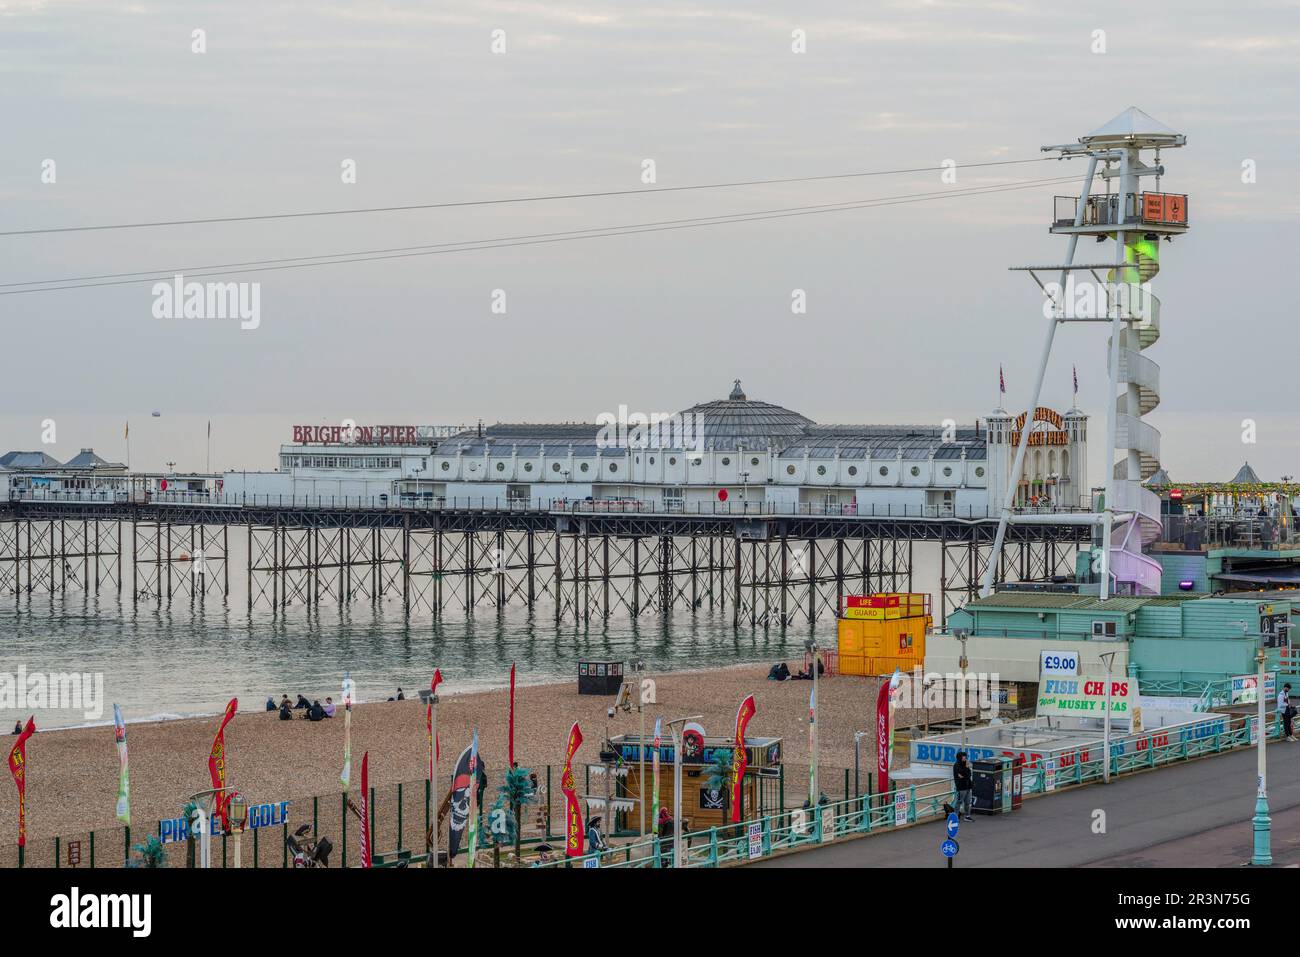 Brighton Seafront and Palace Pier, ein denkmalgeschützter Vergnügungspier der Kategorie II* am Meer in Brighton, berühmtes Wahrzeichen von Brighton, East Sussex, England, Großbritannien Stockfoto